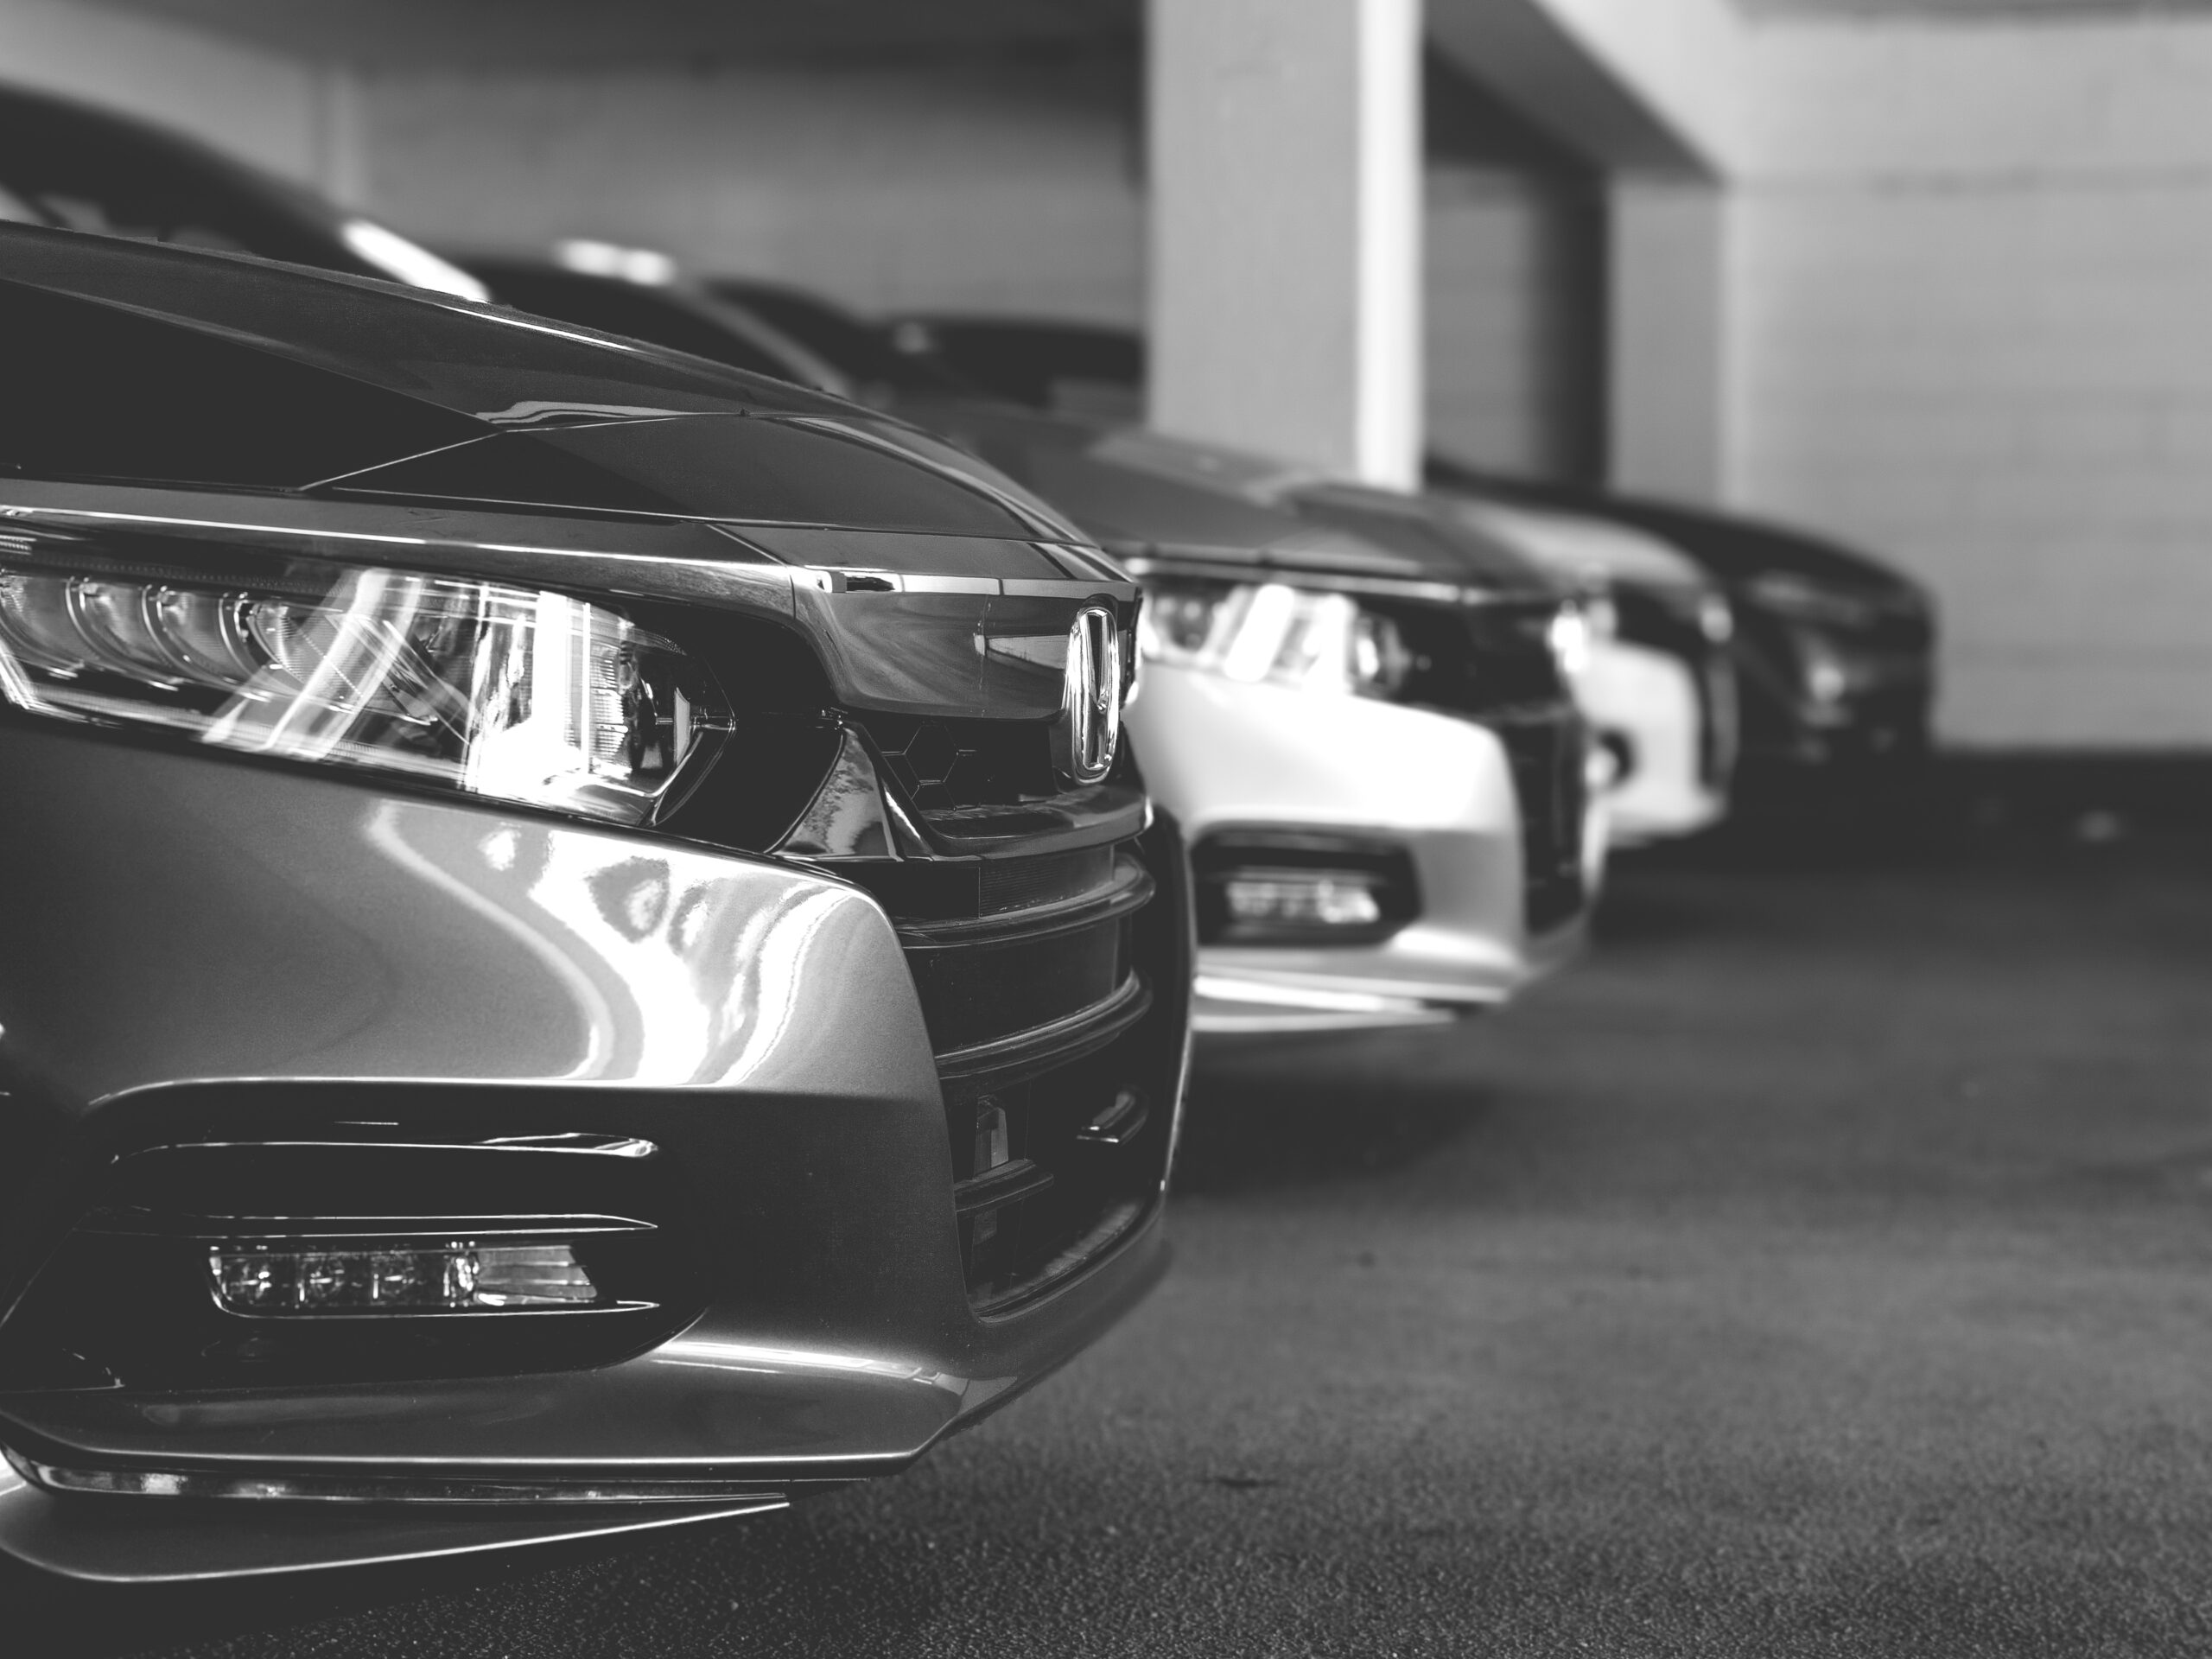 A row of Honda Accords at a dealership